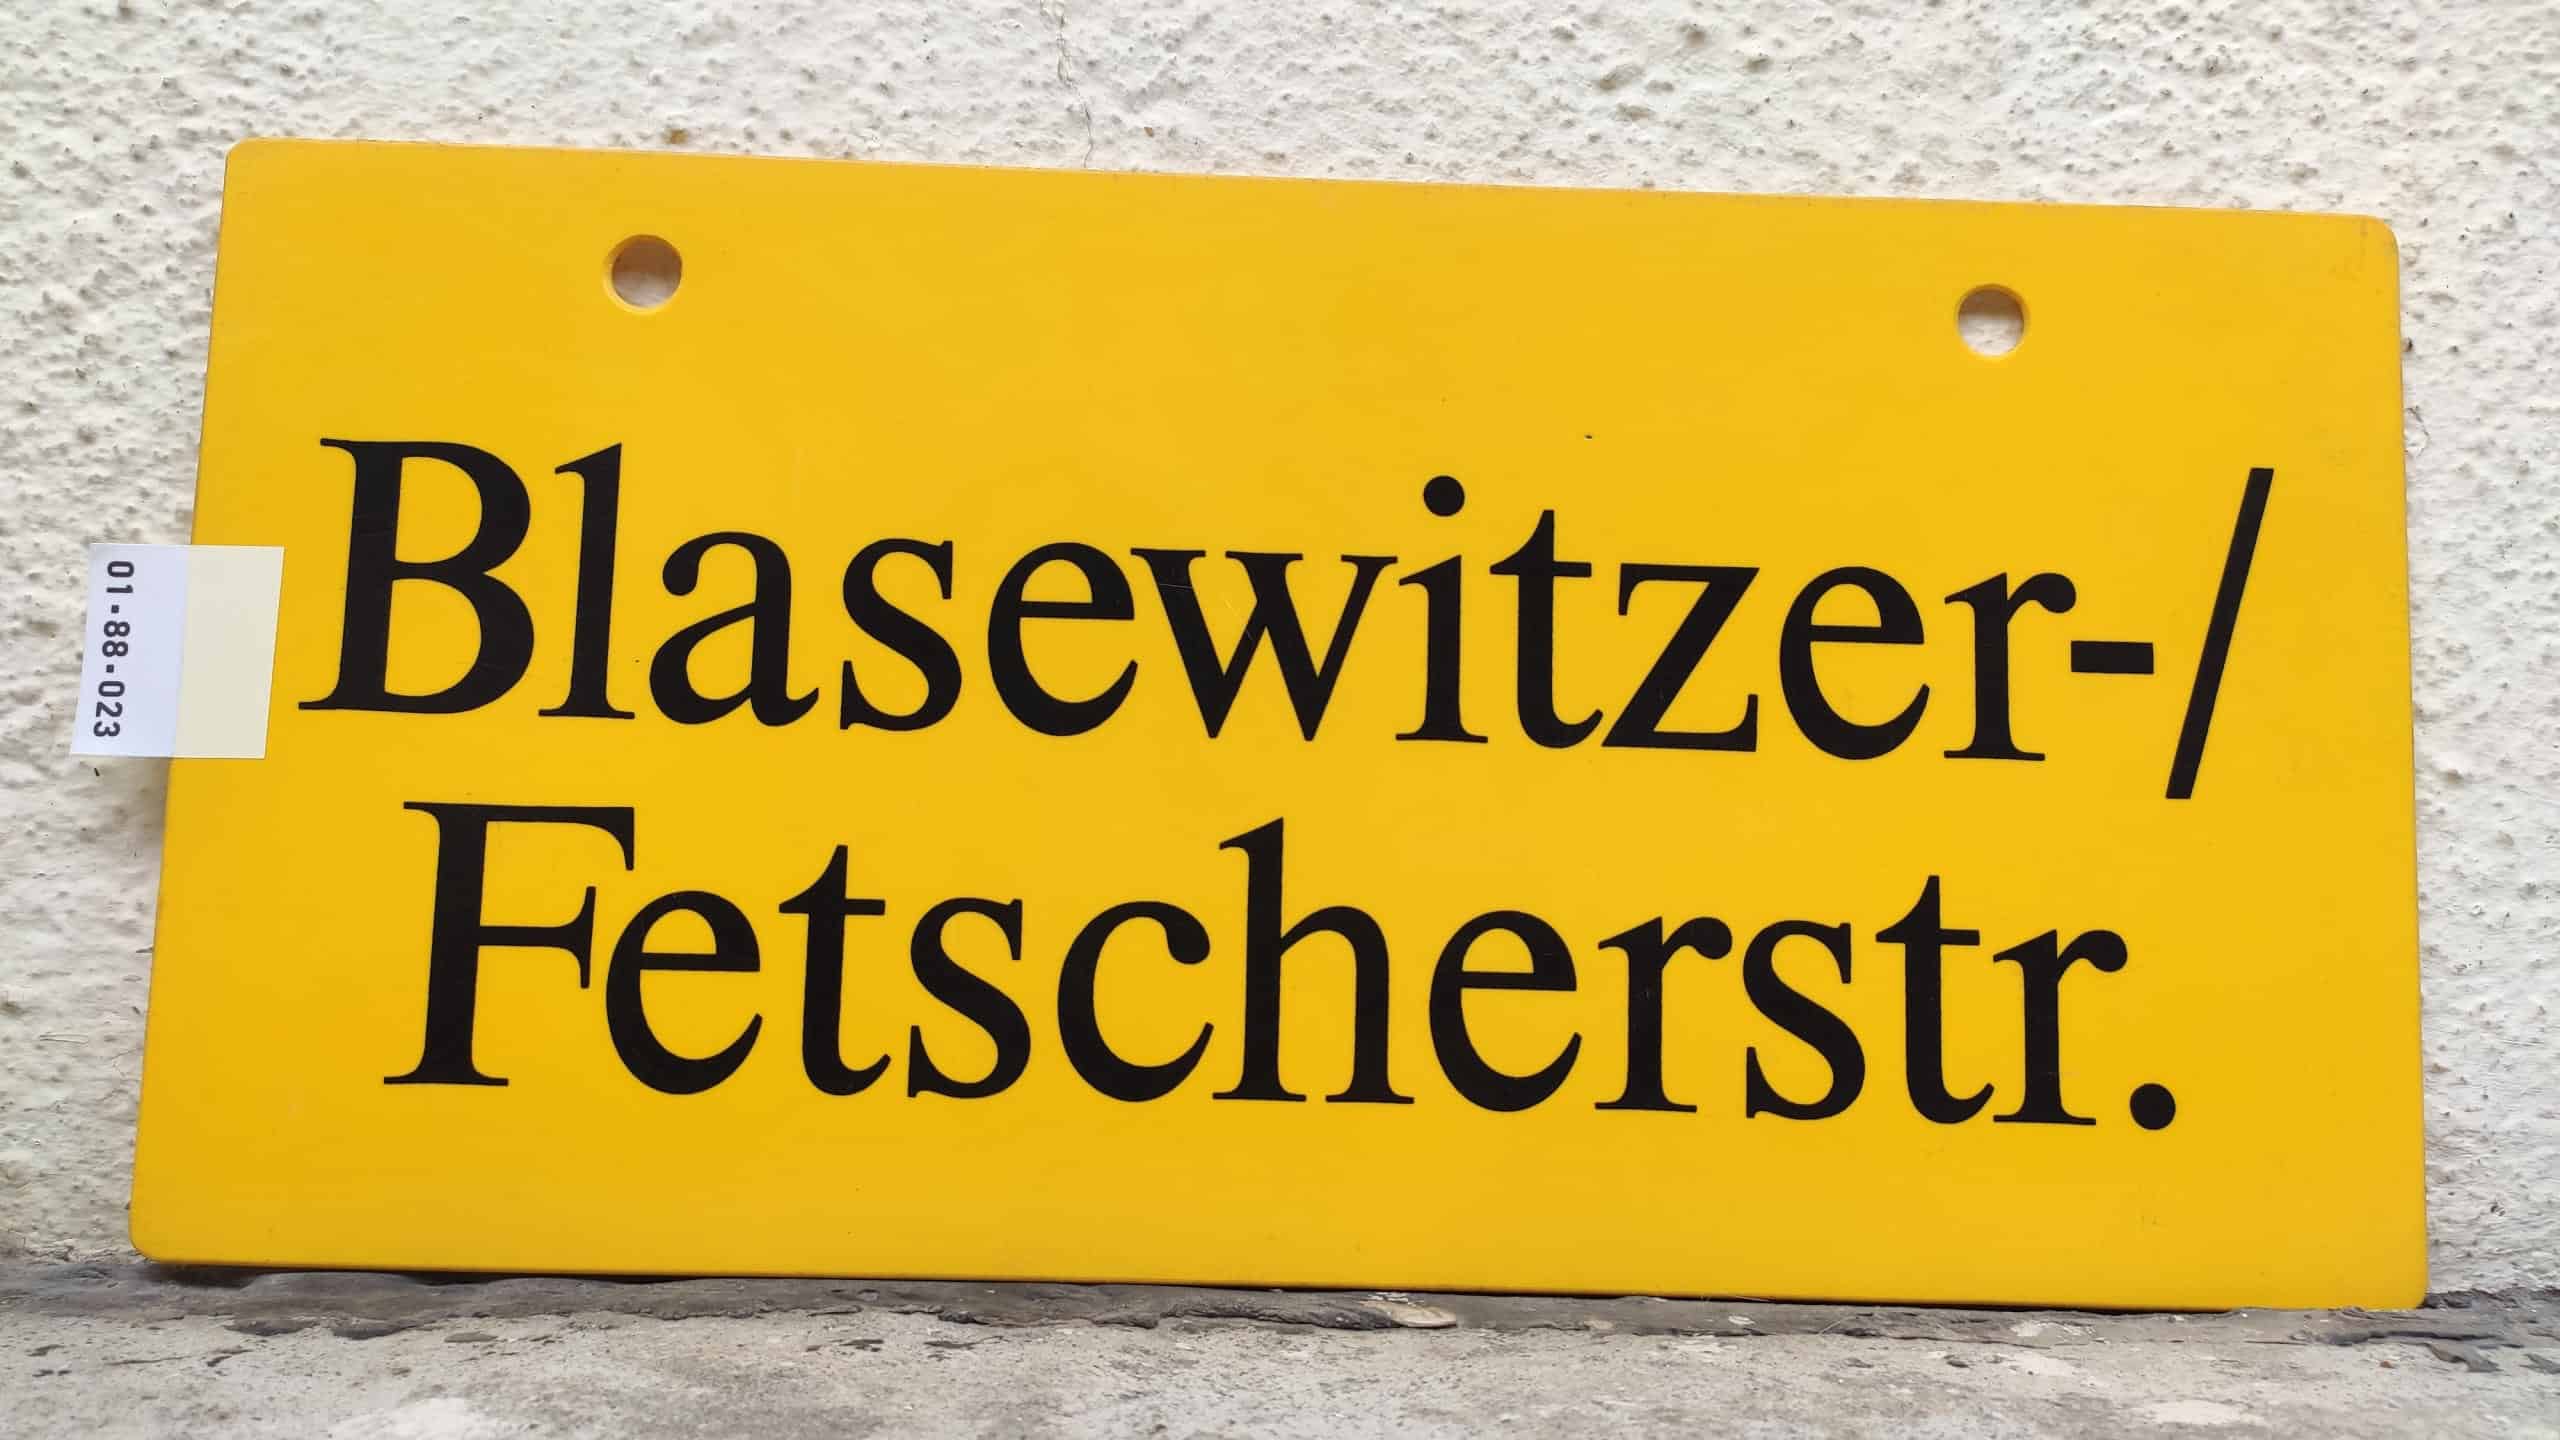 Blasewitzer-/ Fetscherstr.